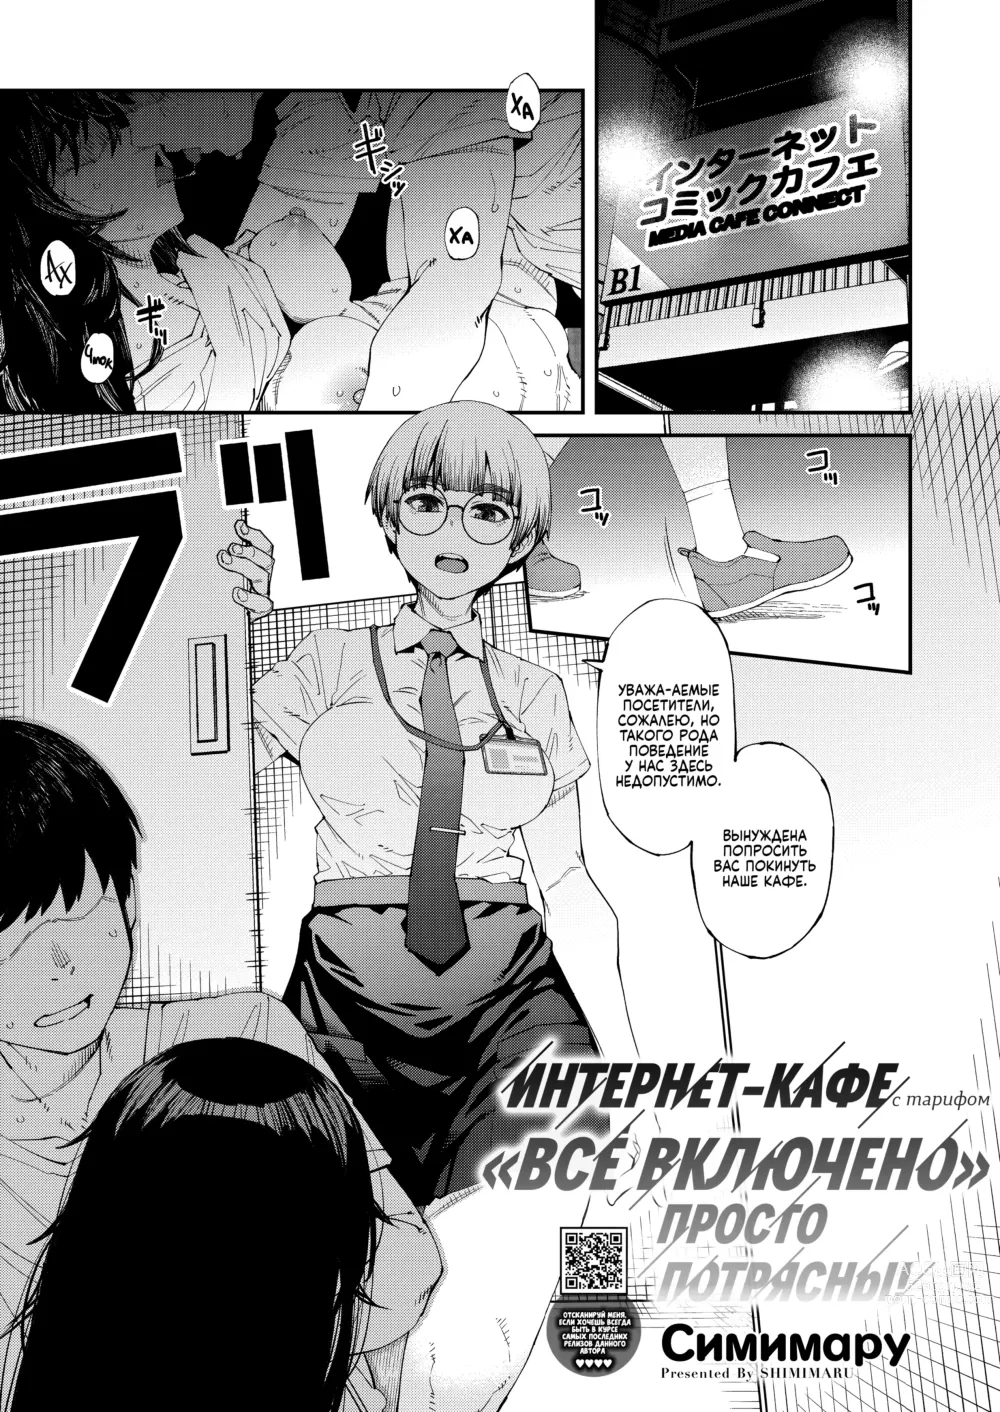 Page 1 of manga Интернет-кафе с тарифом 